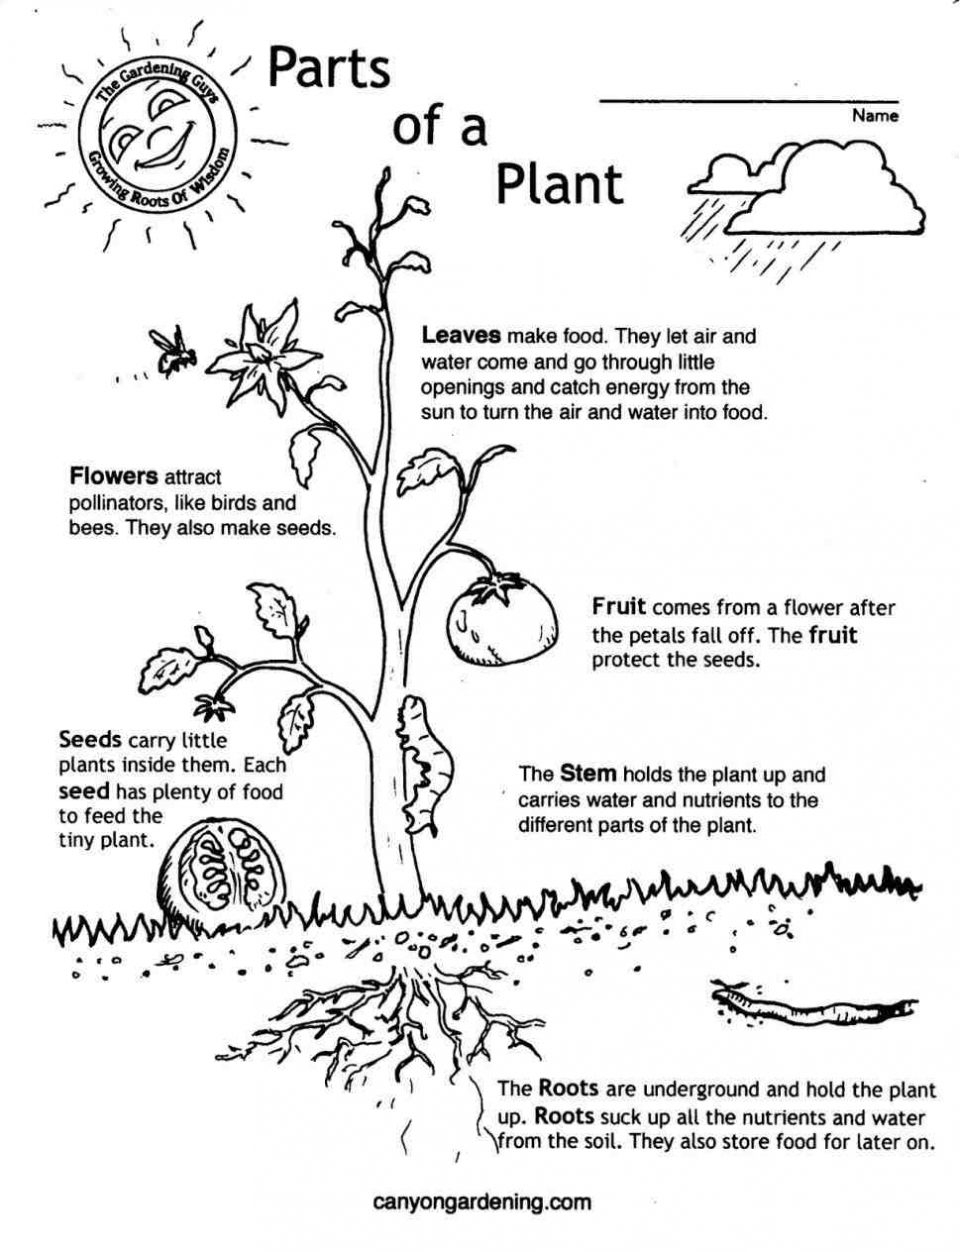 Free Plant Life Cycle Worksheet Printables Printable Worksheets